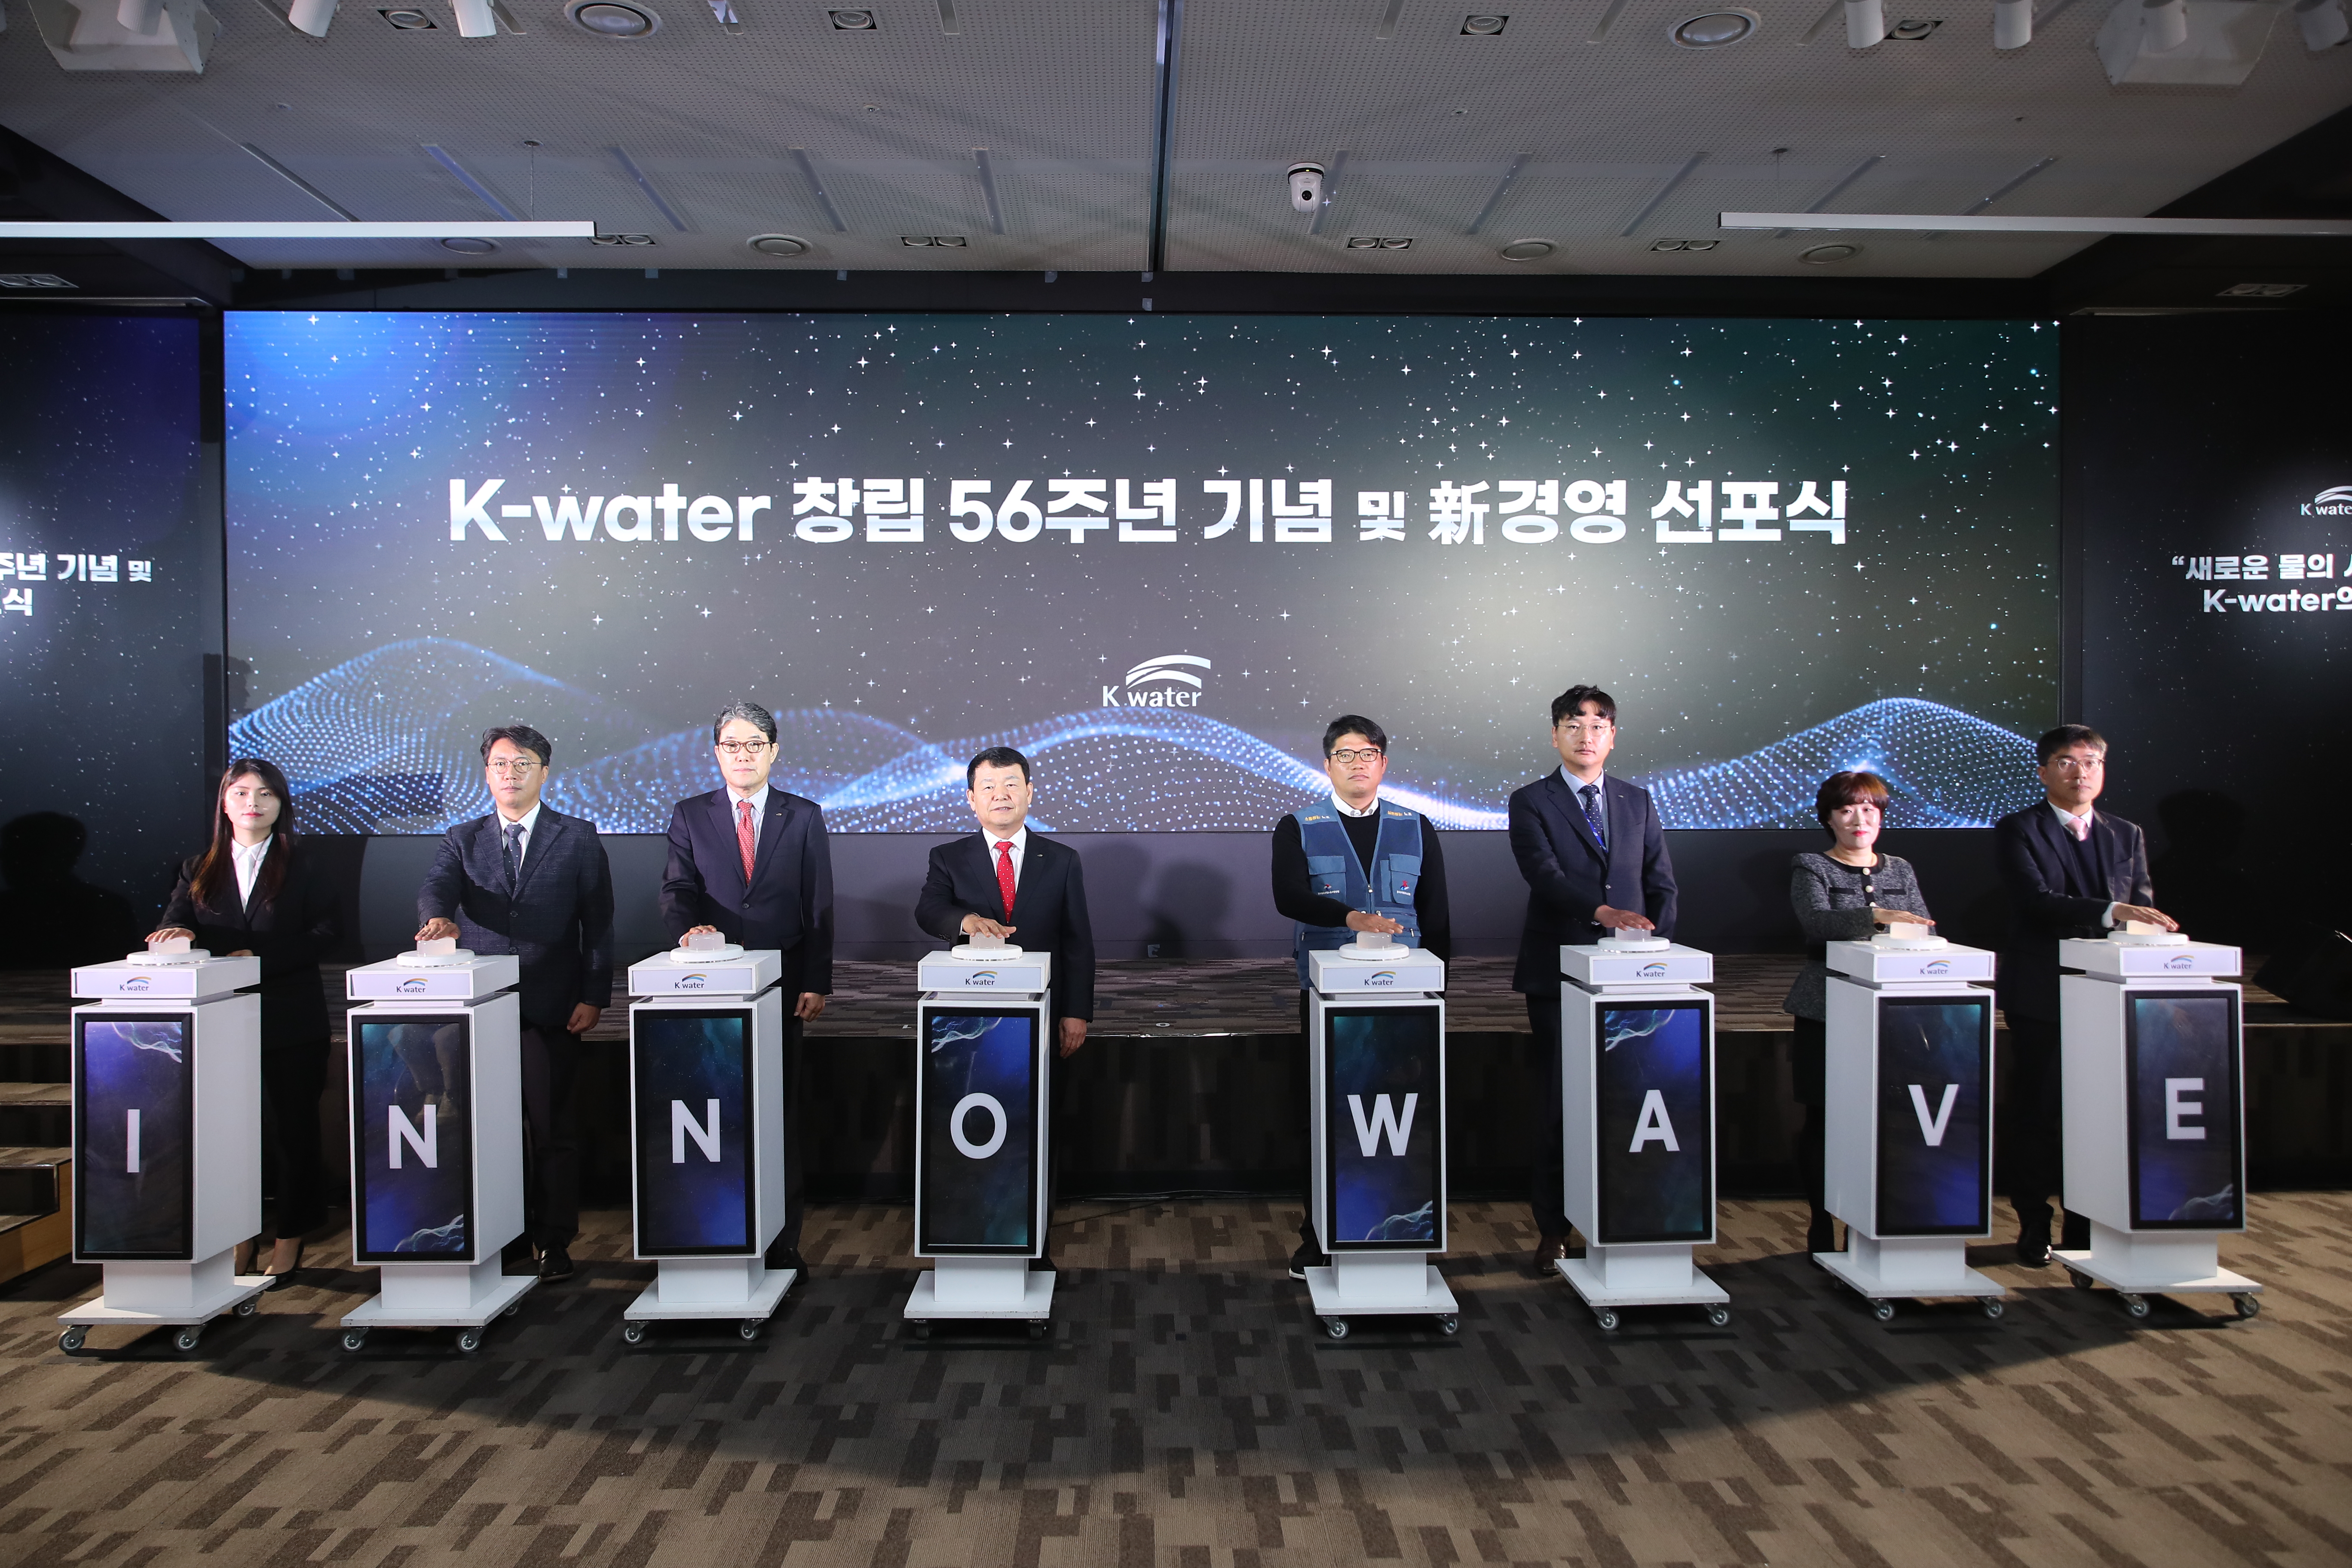  K-water 창립 56주년 기념 및 新경영 선포식